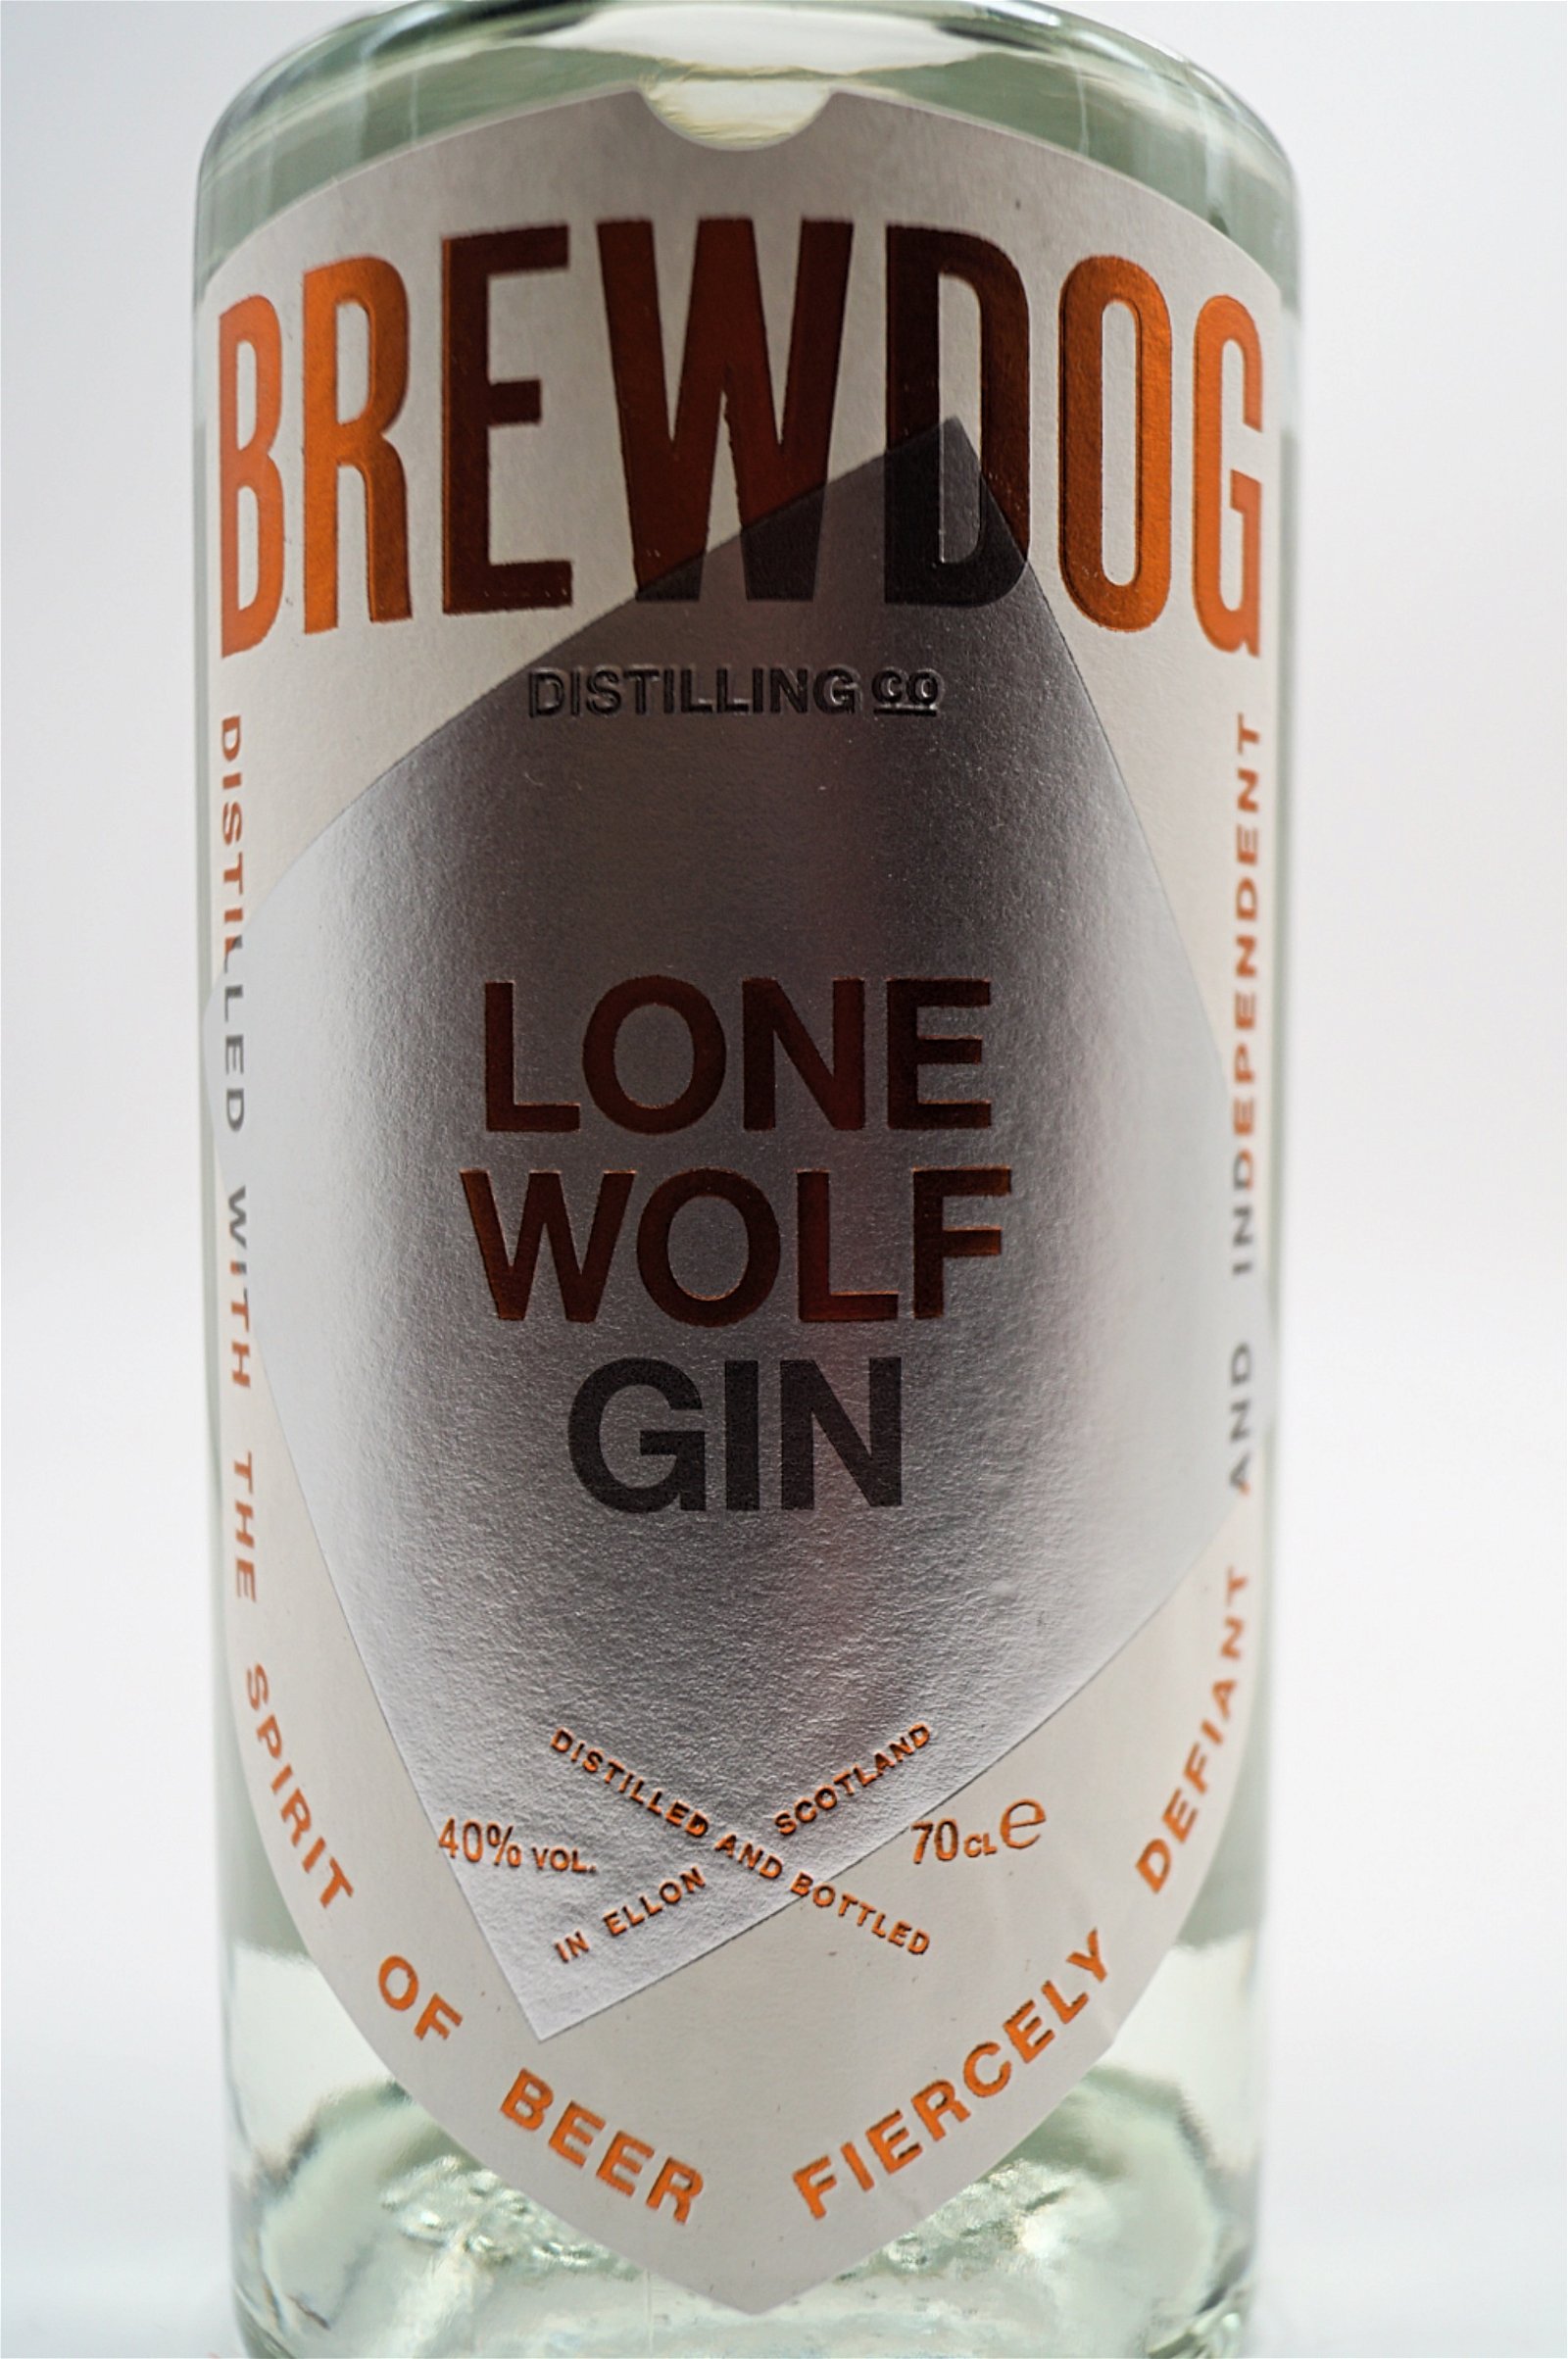 BrewDog Lonewolf Gin